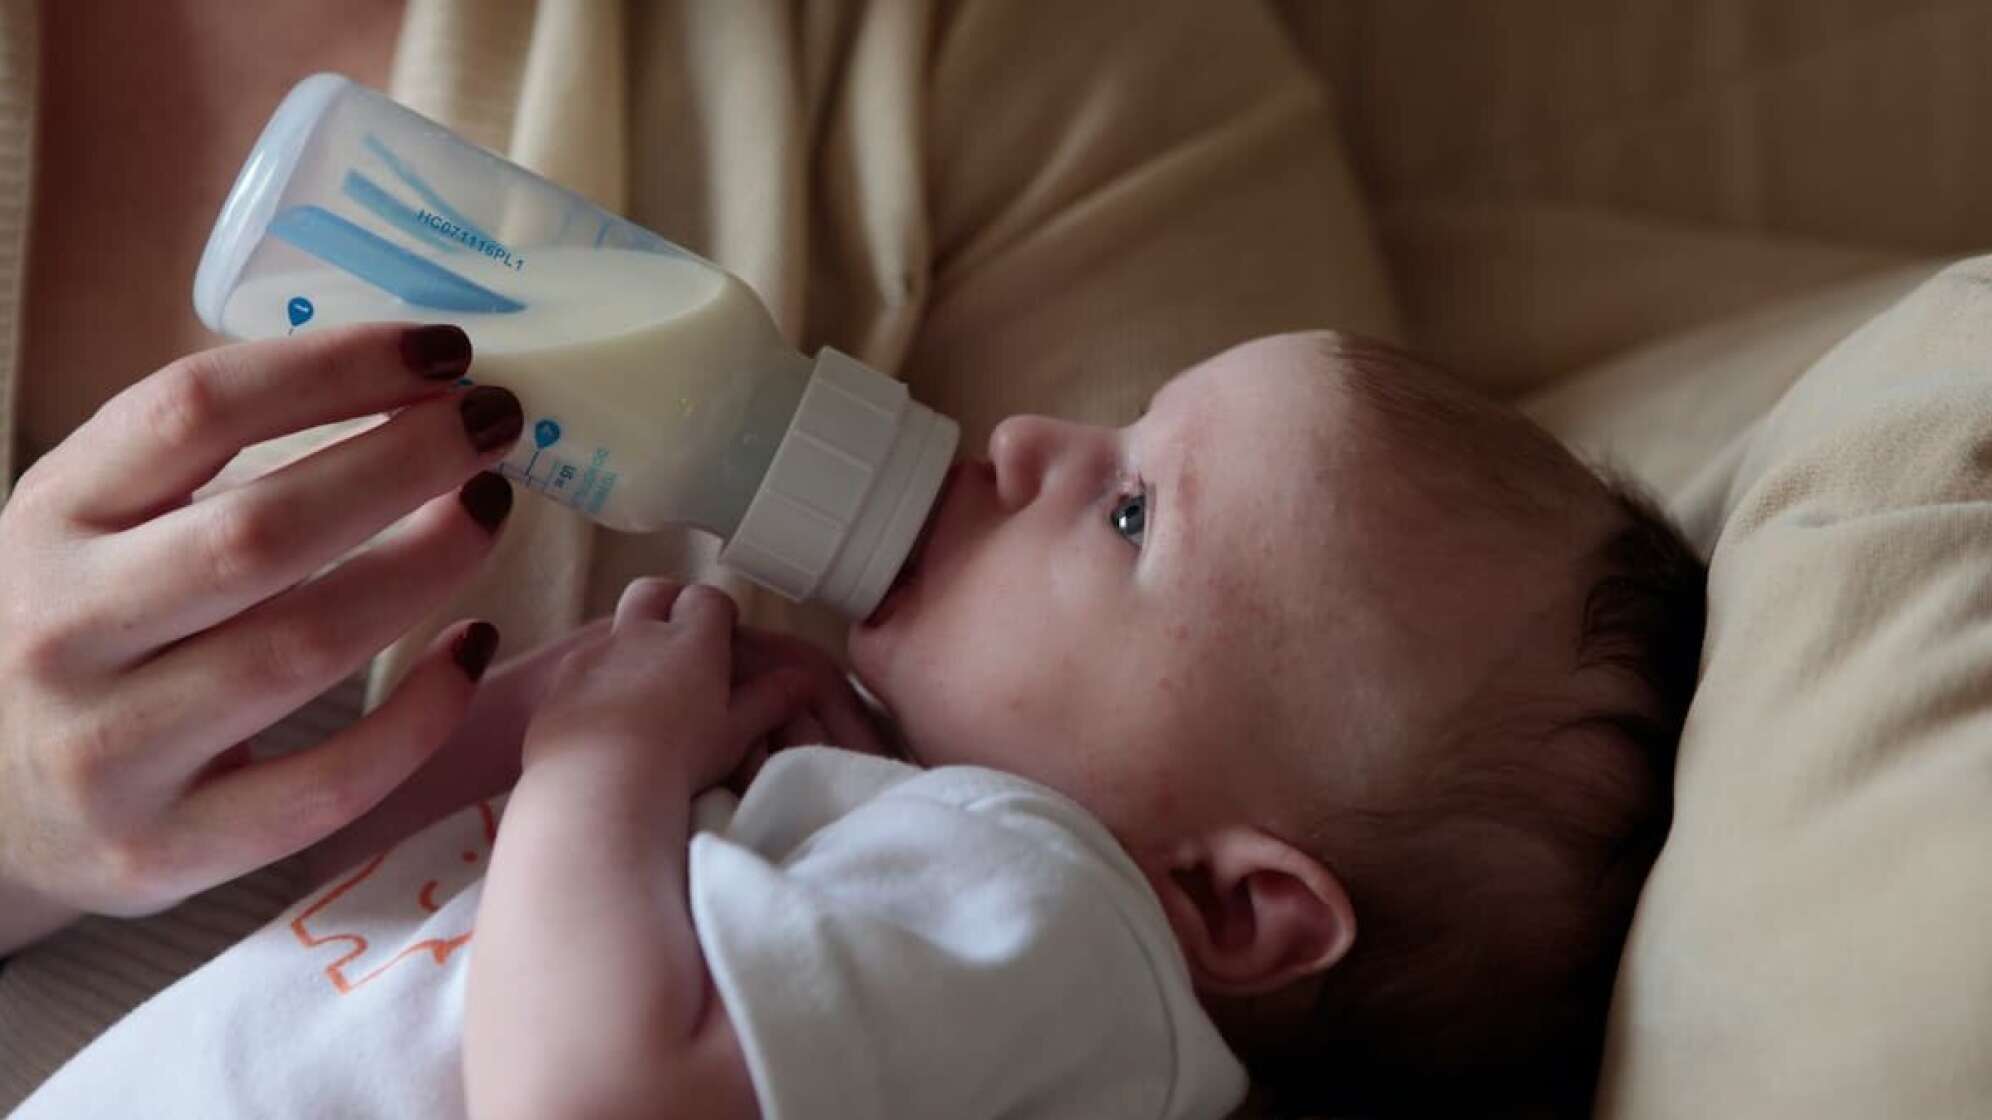 Ein Kind trinkt Milch aus einer Flasche